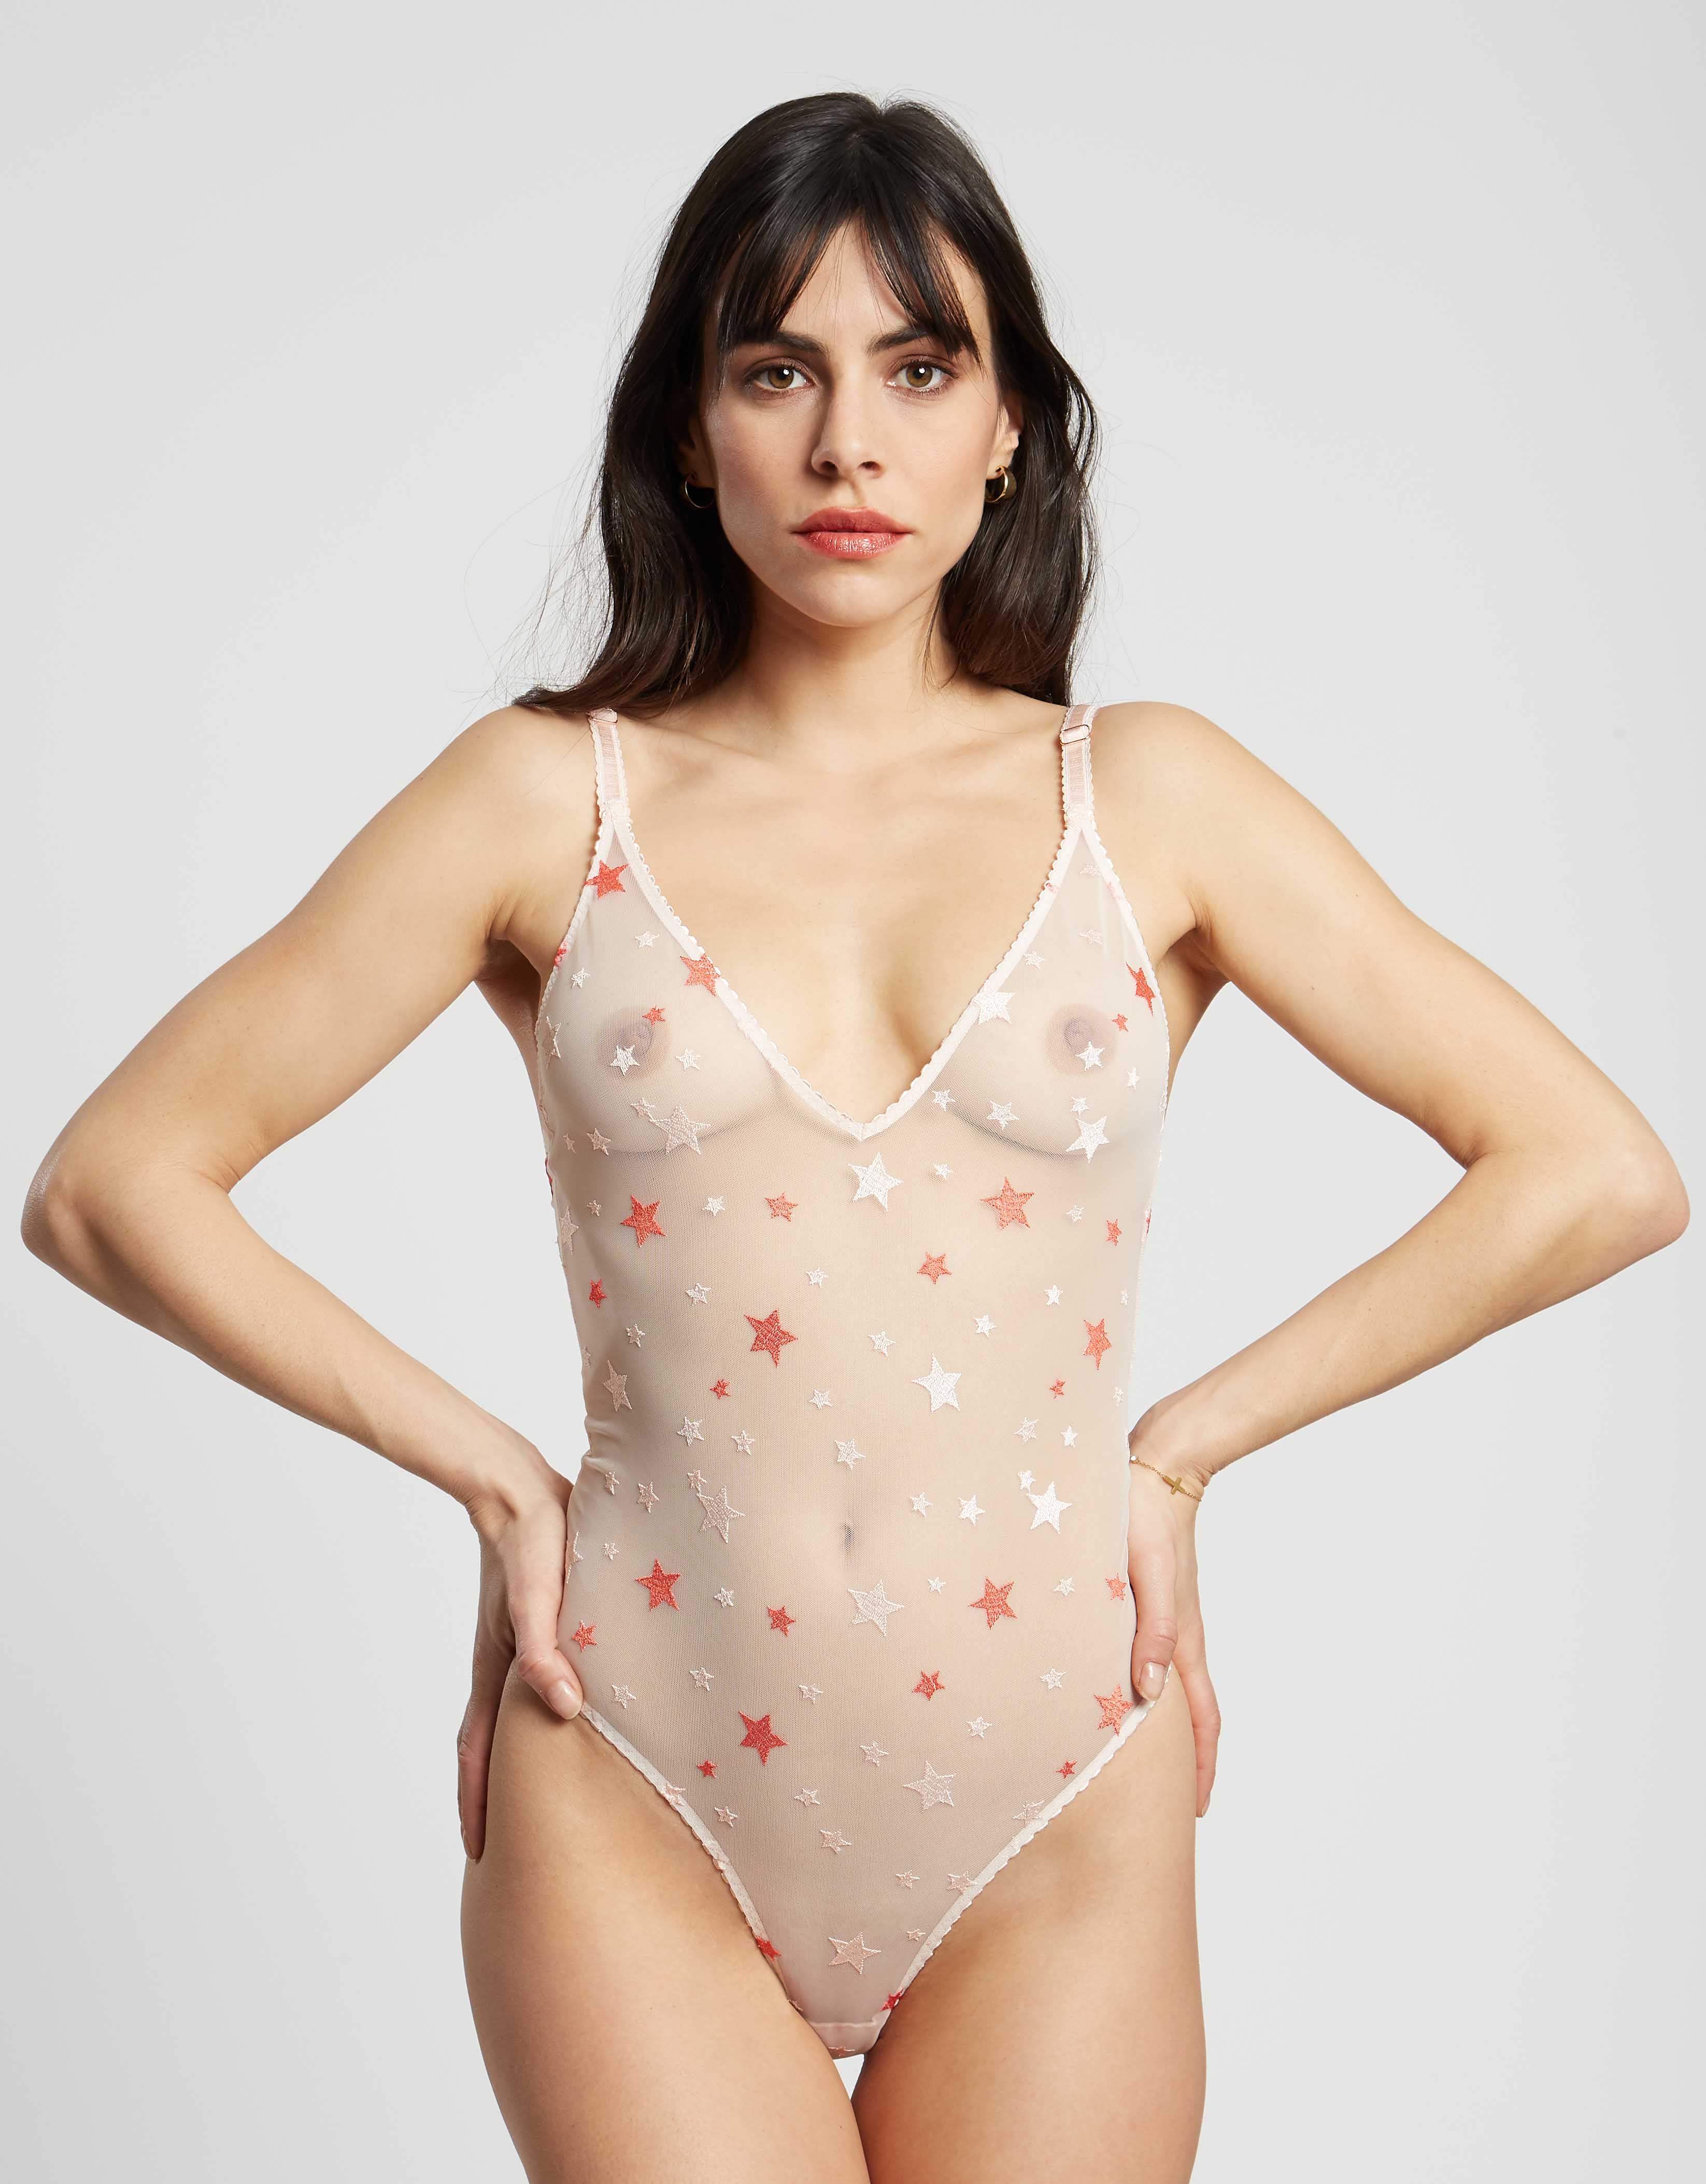 https://www.girlsinparis.com/images/lingerie/soutien-gorge-avec-armatures-melrose_5354_05_a.jpg